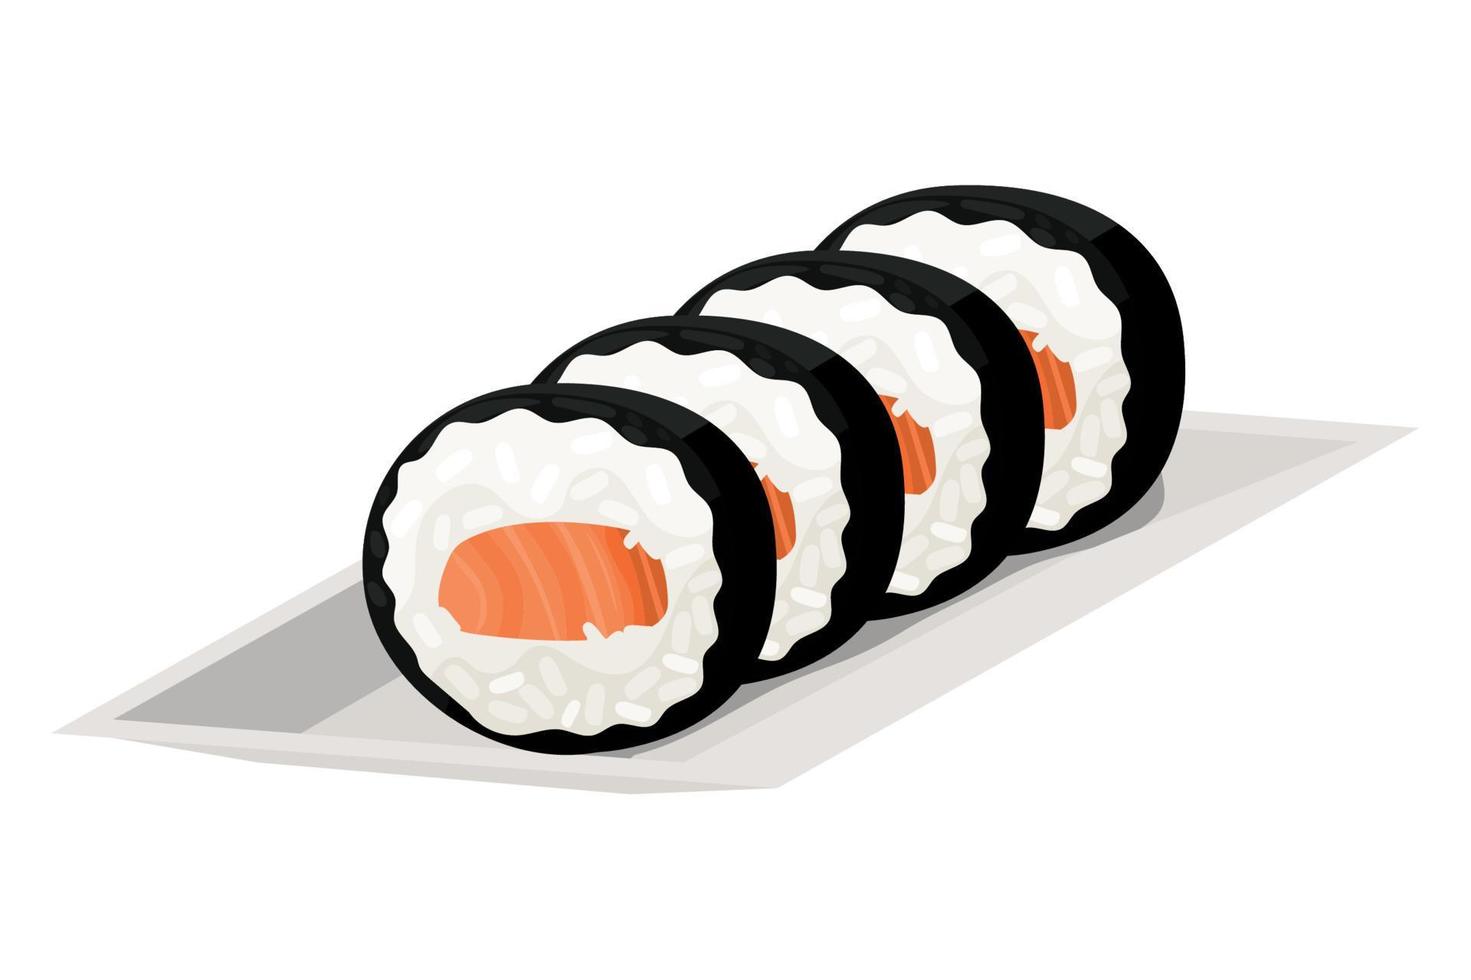 sushi culture japonaise nourriture vecteur